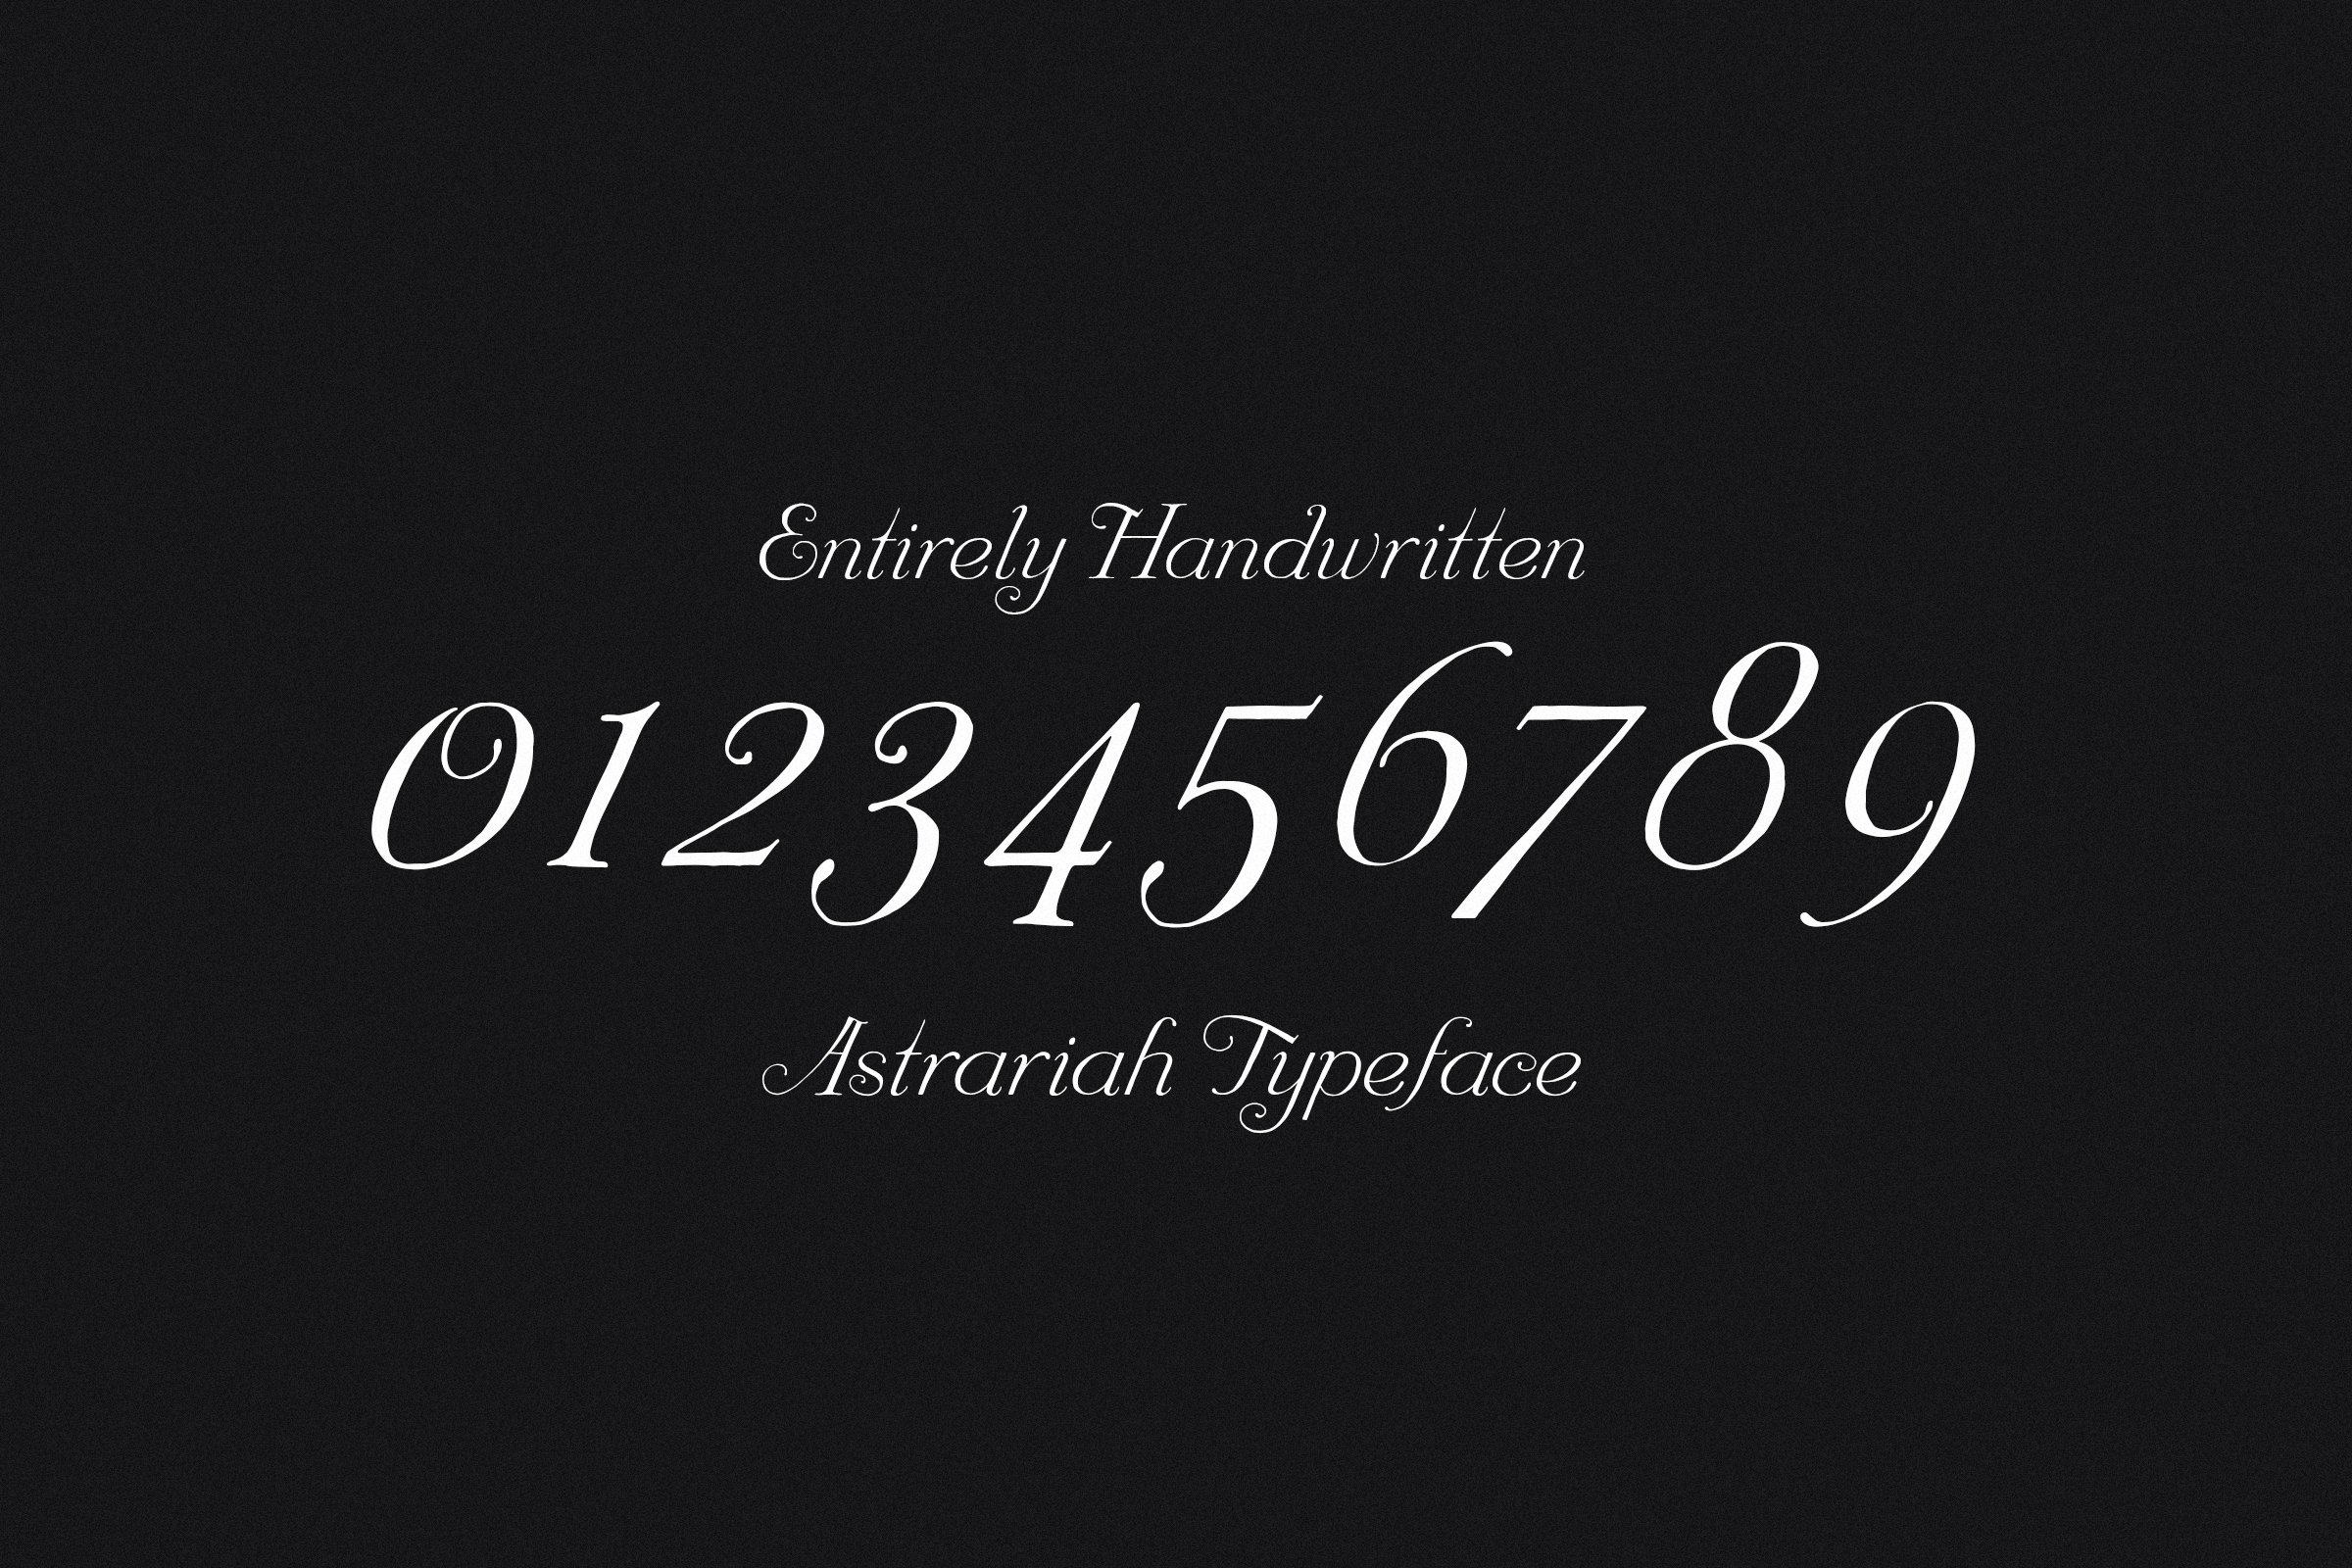 entirely handwritten typeface 5 284